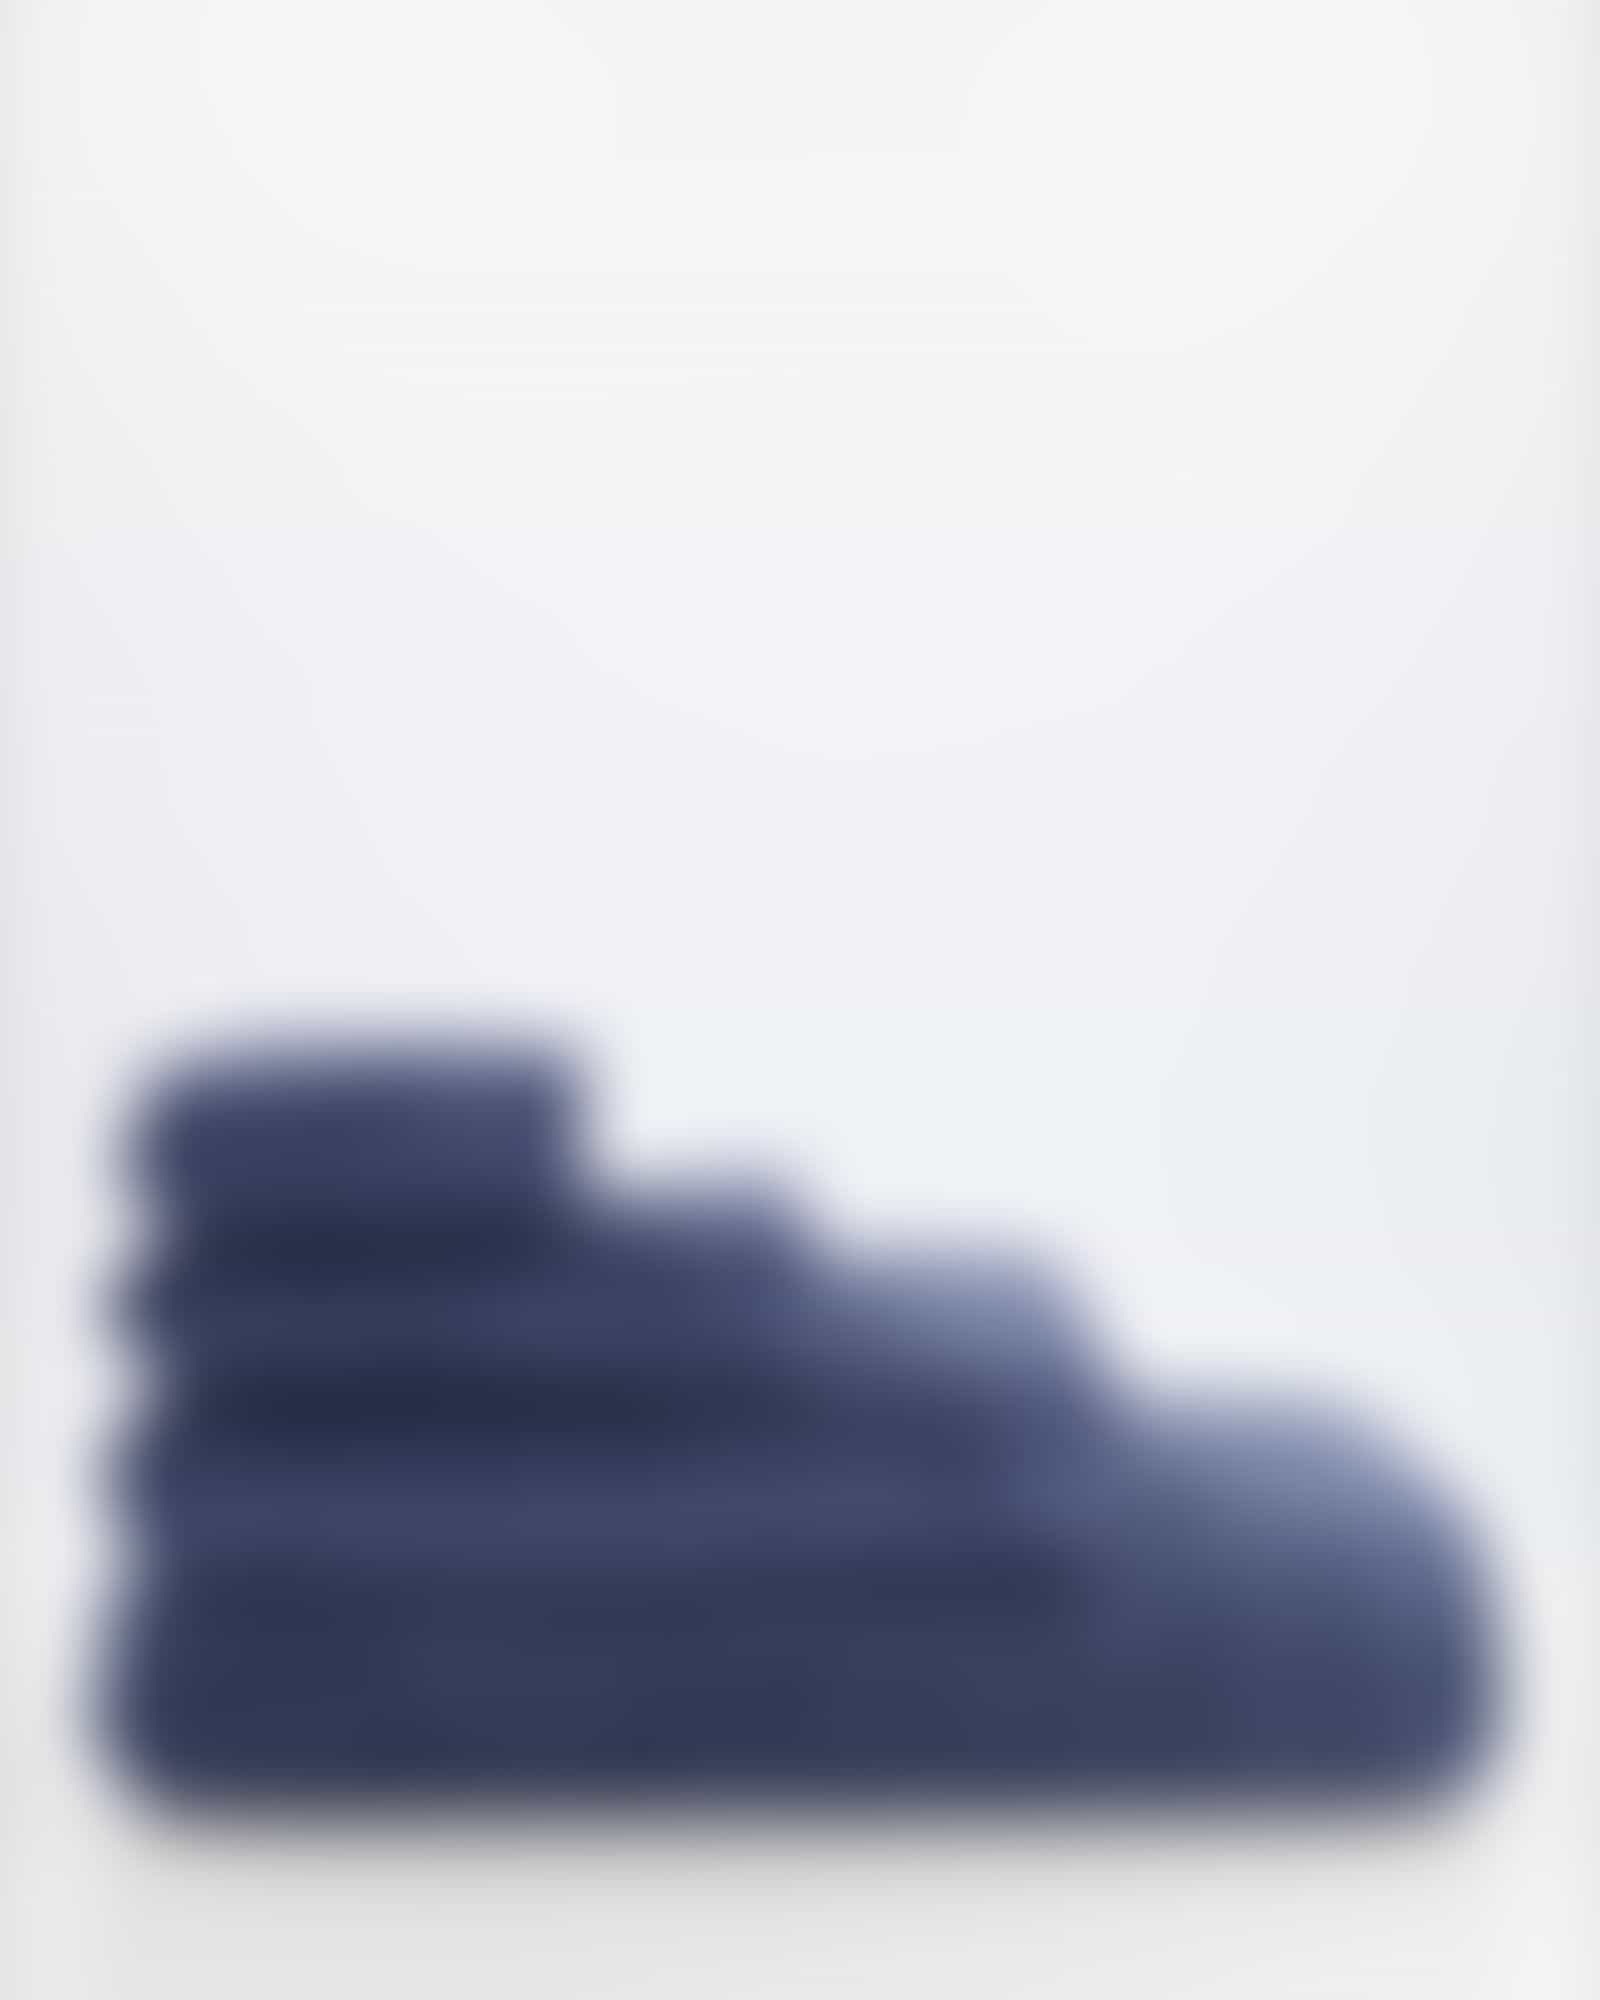 Cawö - Life Style Uni 7007 - Farbe: nachtblau - 111 Waschhandschuh 16x22 cm